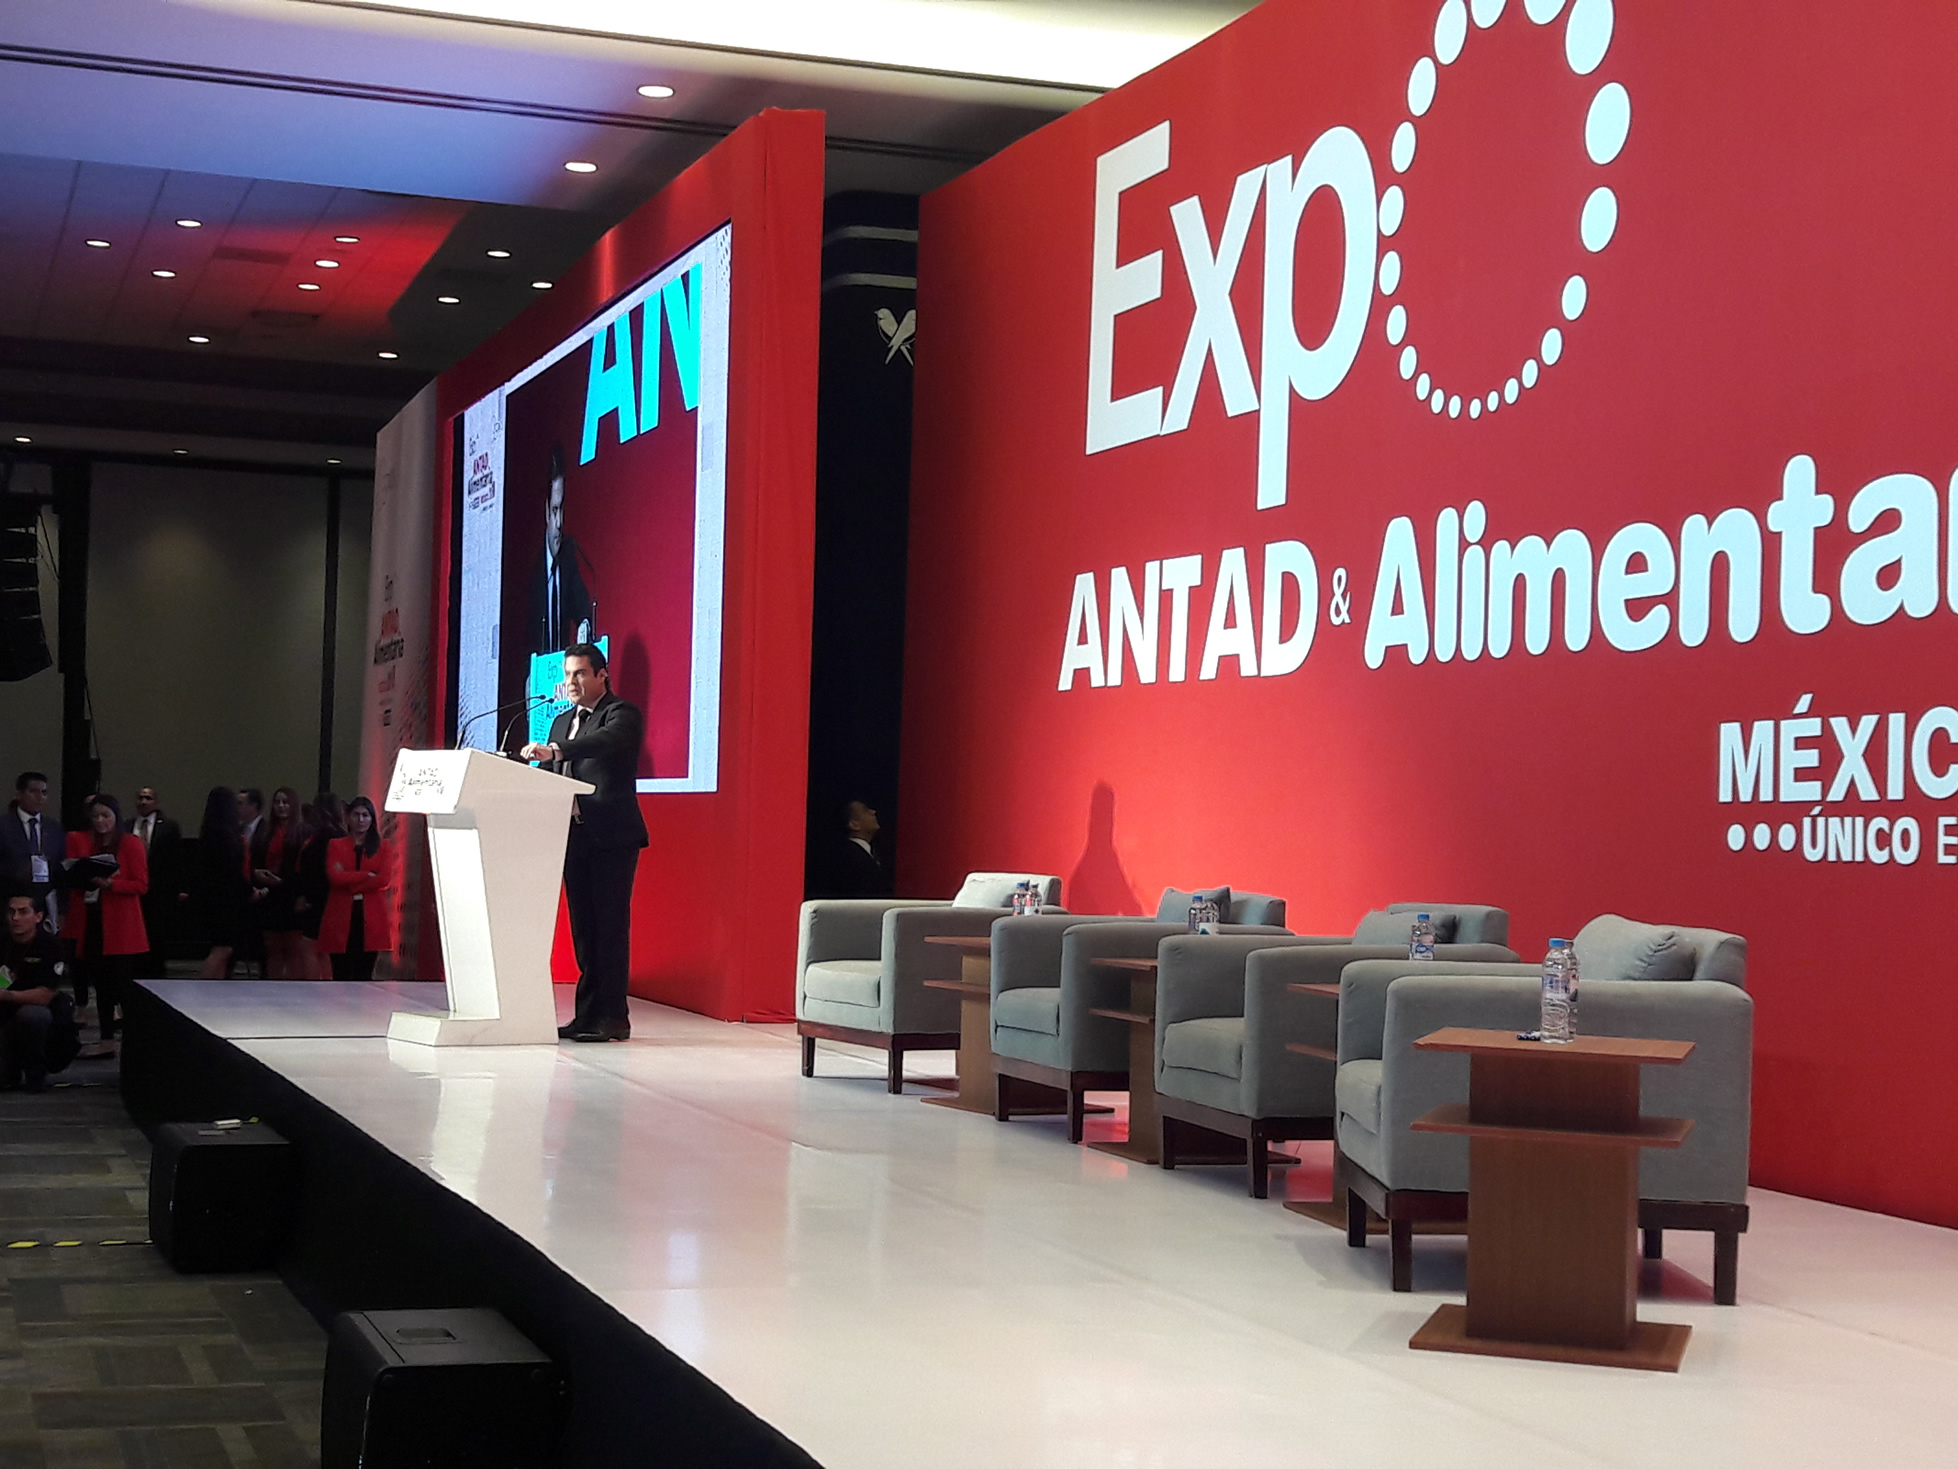 Expo Antad & Alimentaria México 2018